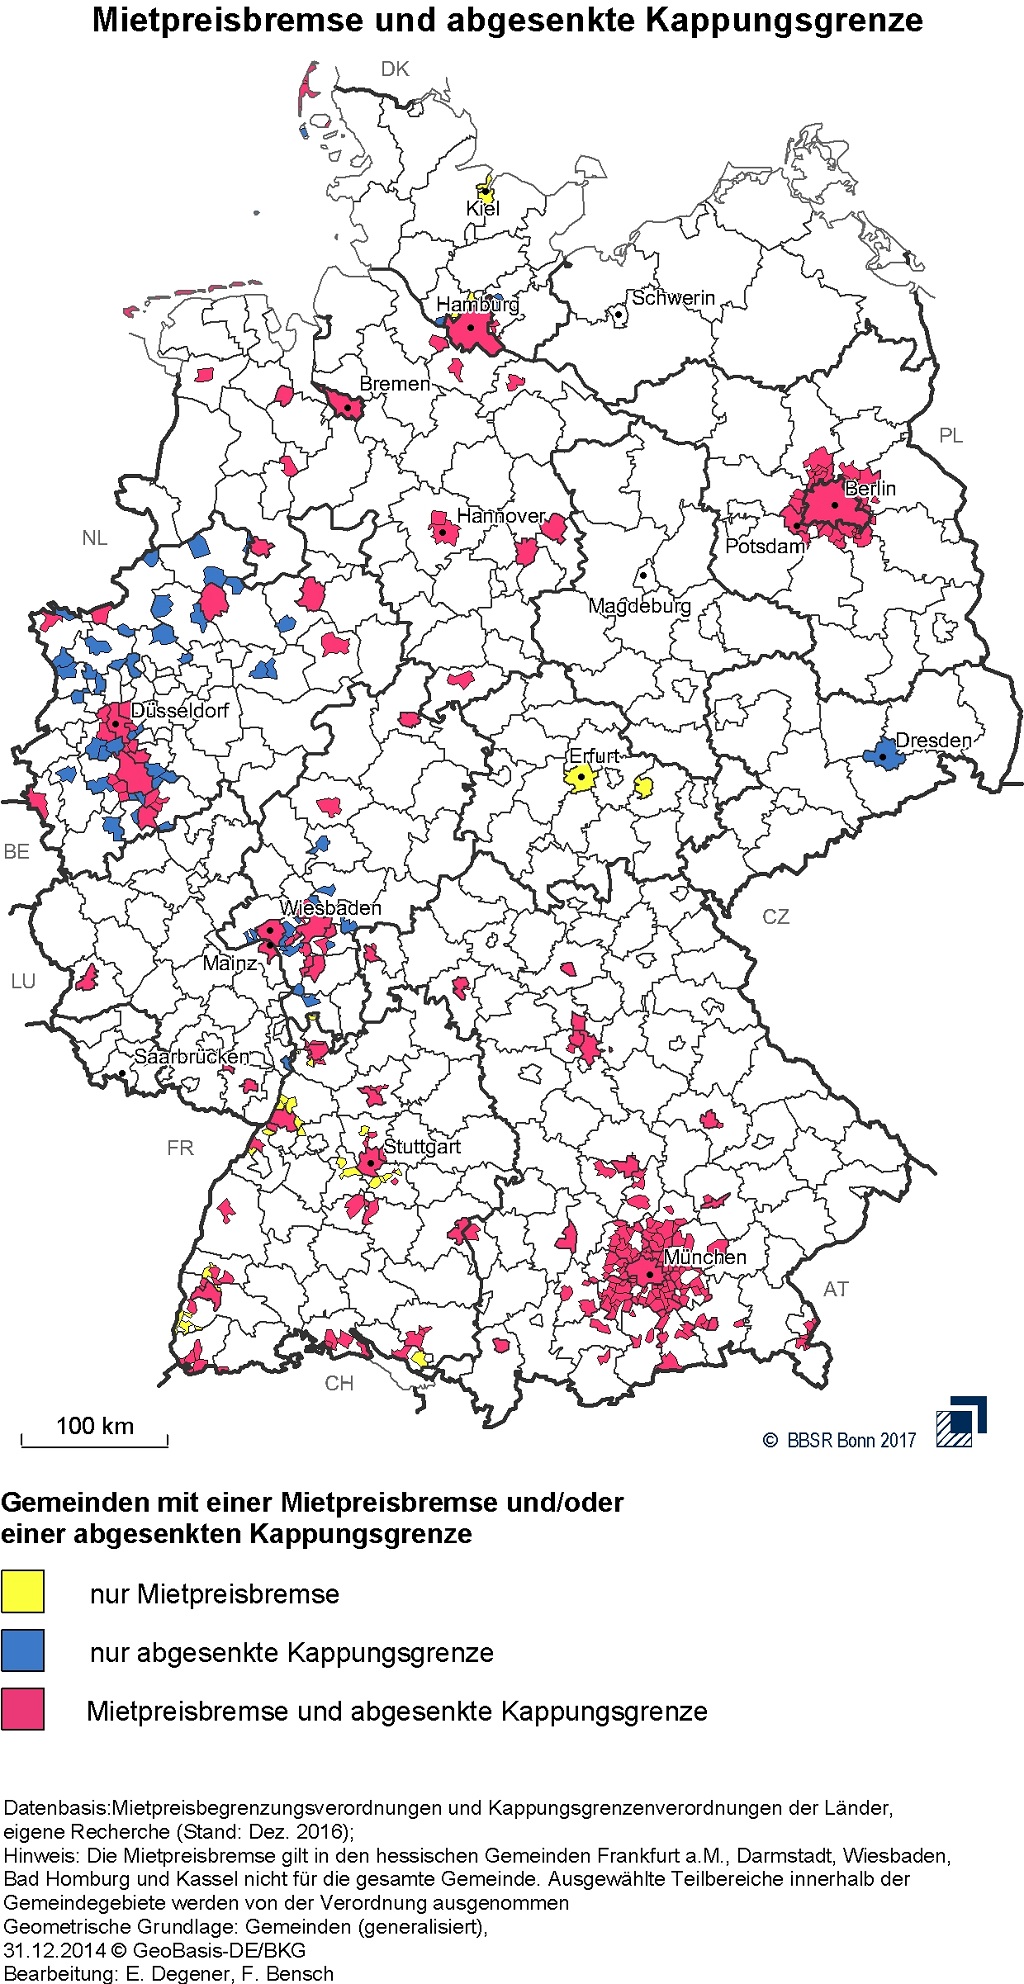 Deutschlandkarte, auf der die Gemeinden mit Kappungsgrenze und Mietpreisbremse farblich gekennzeichnet sind